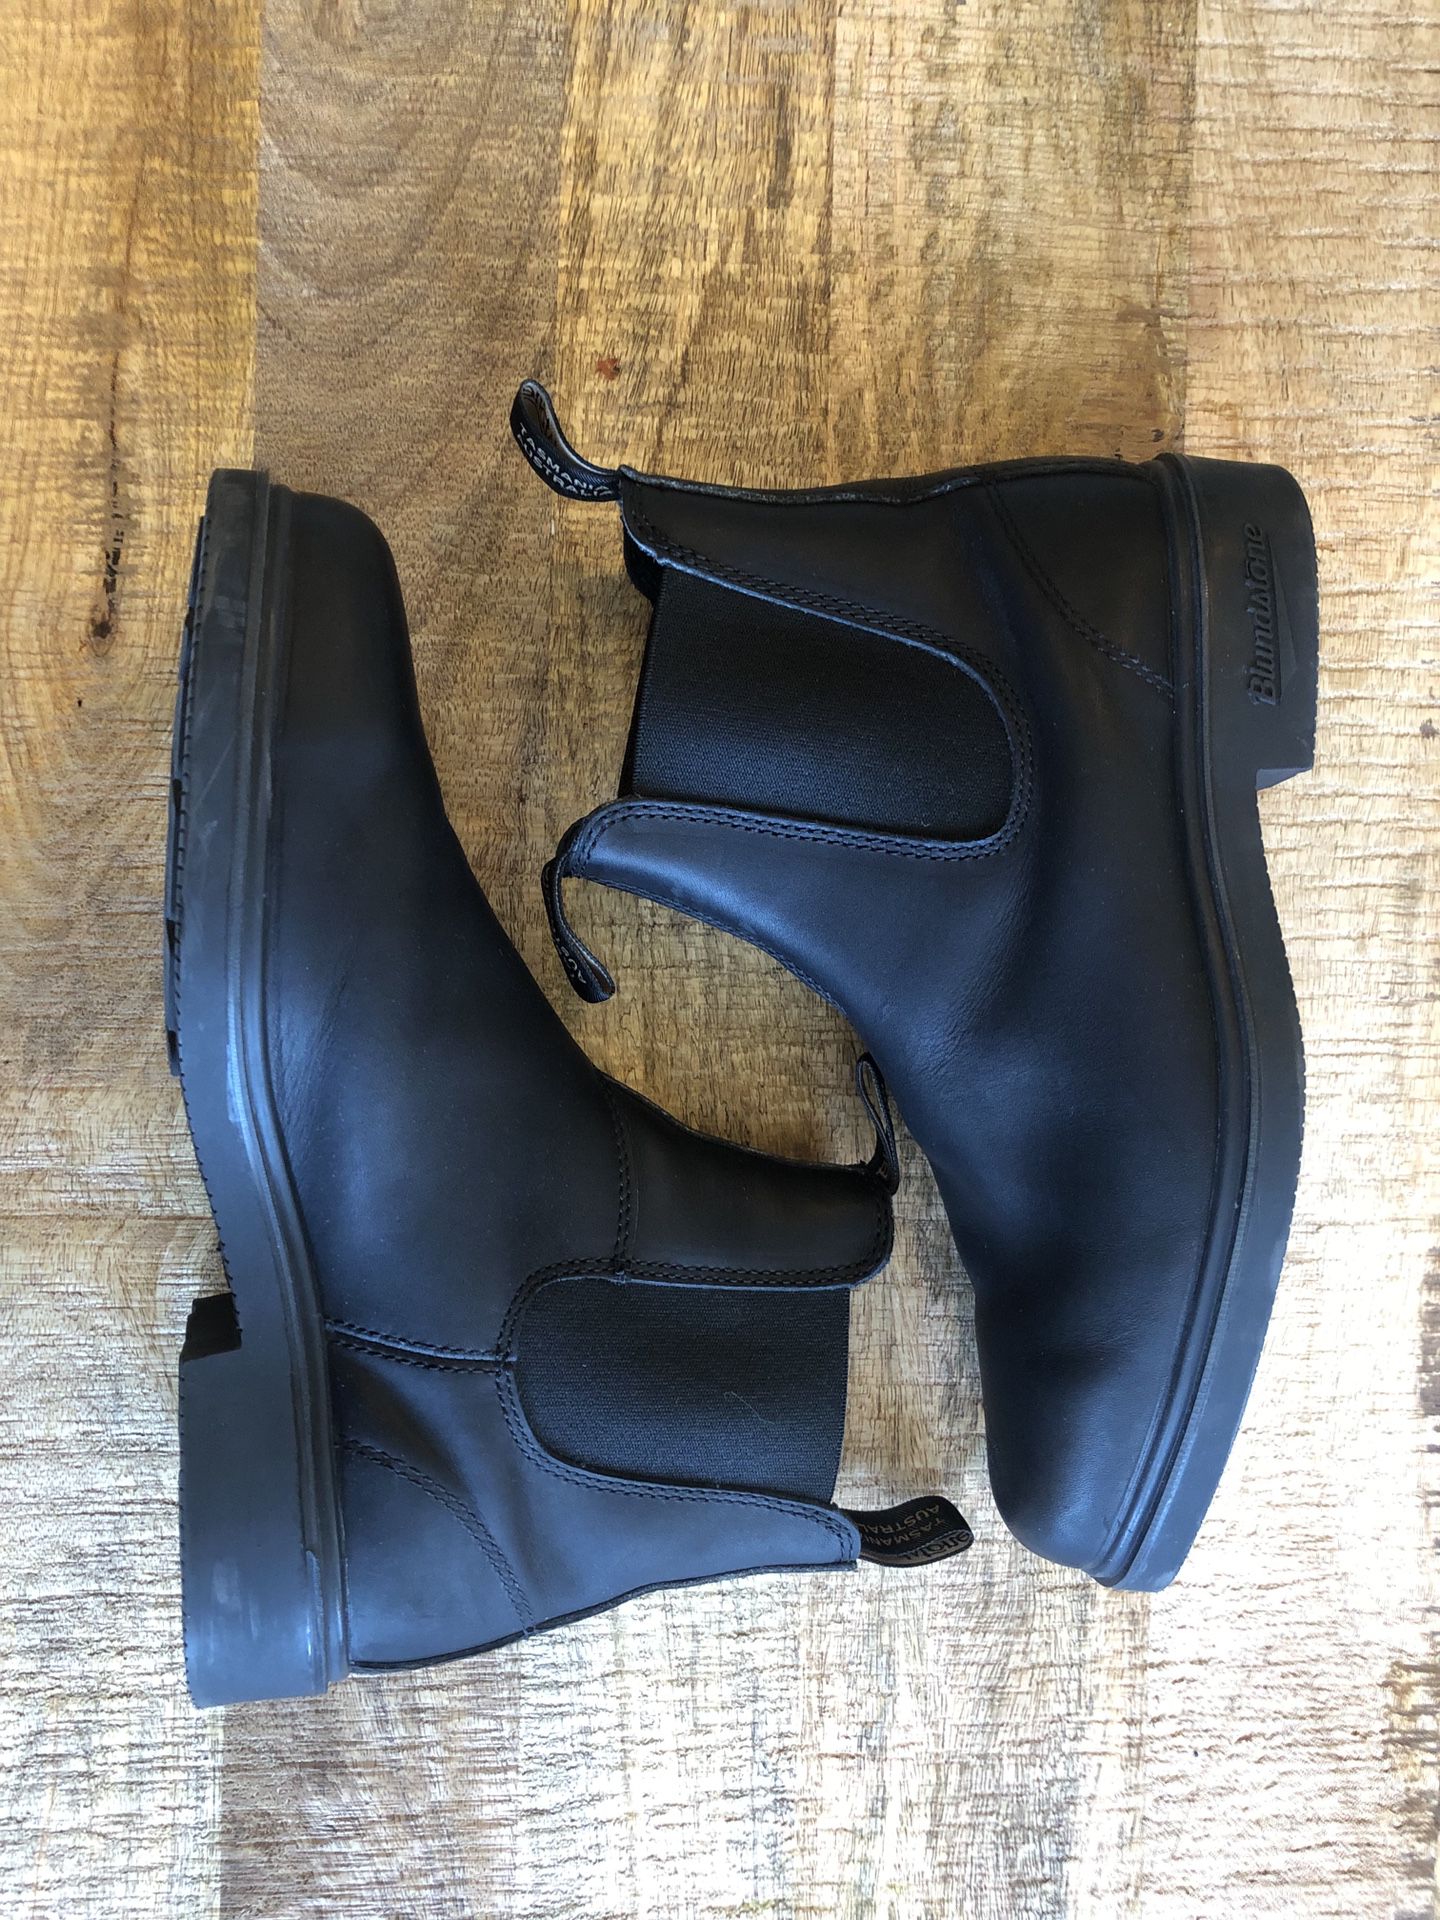 Men’s Blundstone Dress Boot (Size:11)